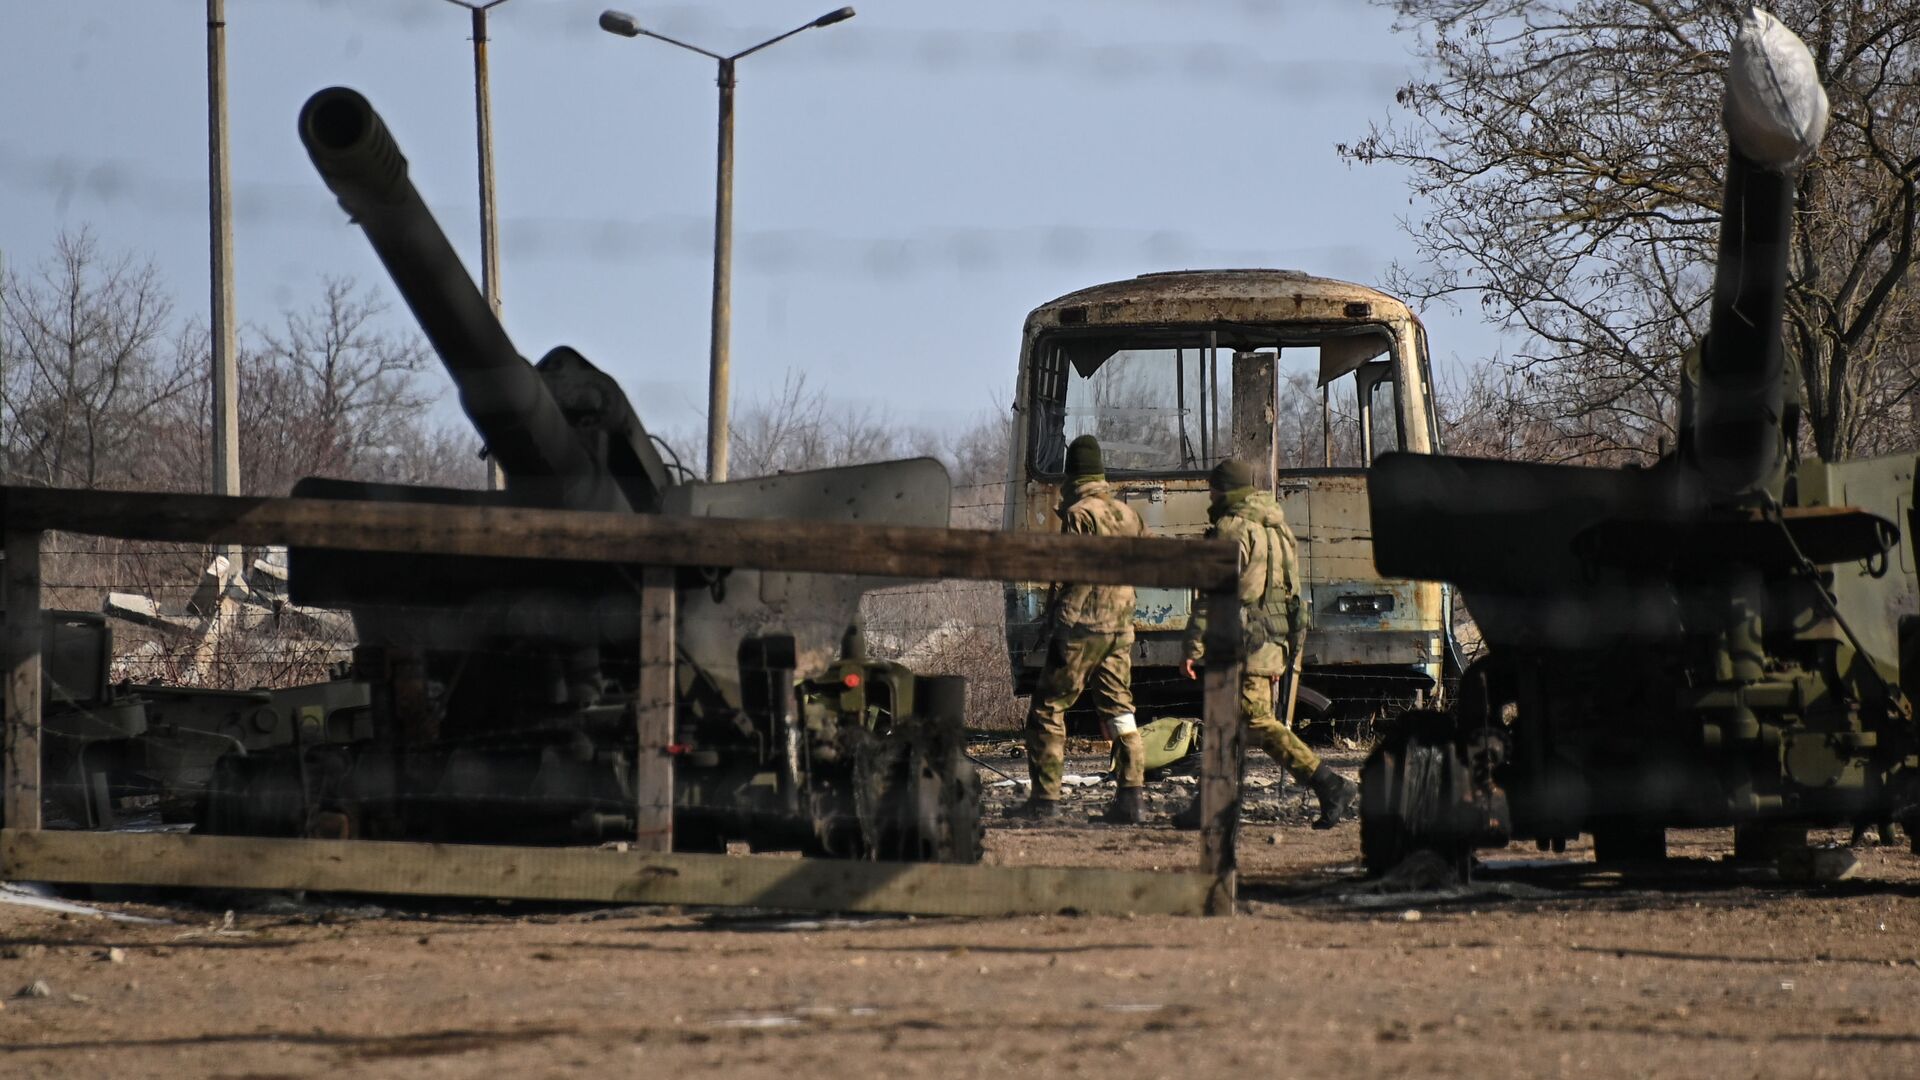 مدفع هاوتزر من وحدة مدفعية تركتها القوات المسلحة الأوكرانية في بيرديانسك، أوكرانيا 12 مارس 2022 - سبوتنيك عربي, 1920, 03.08.2022